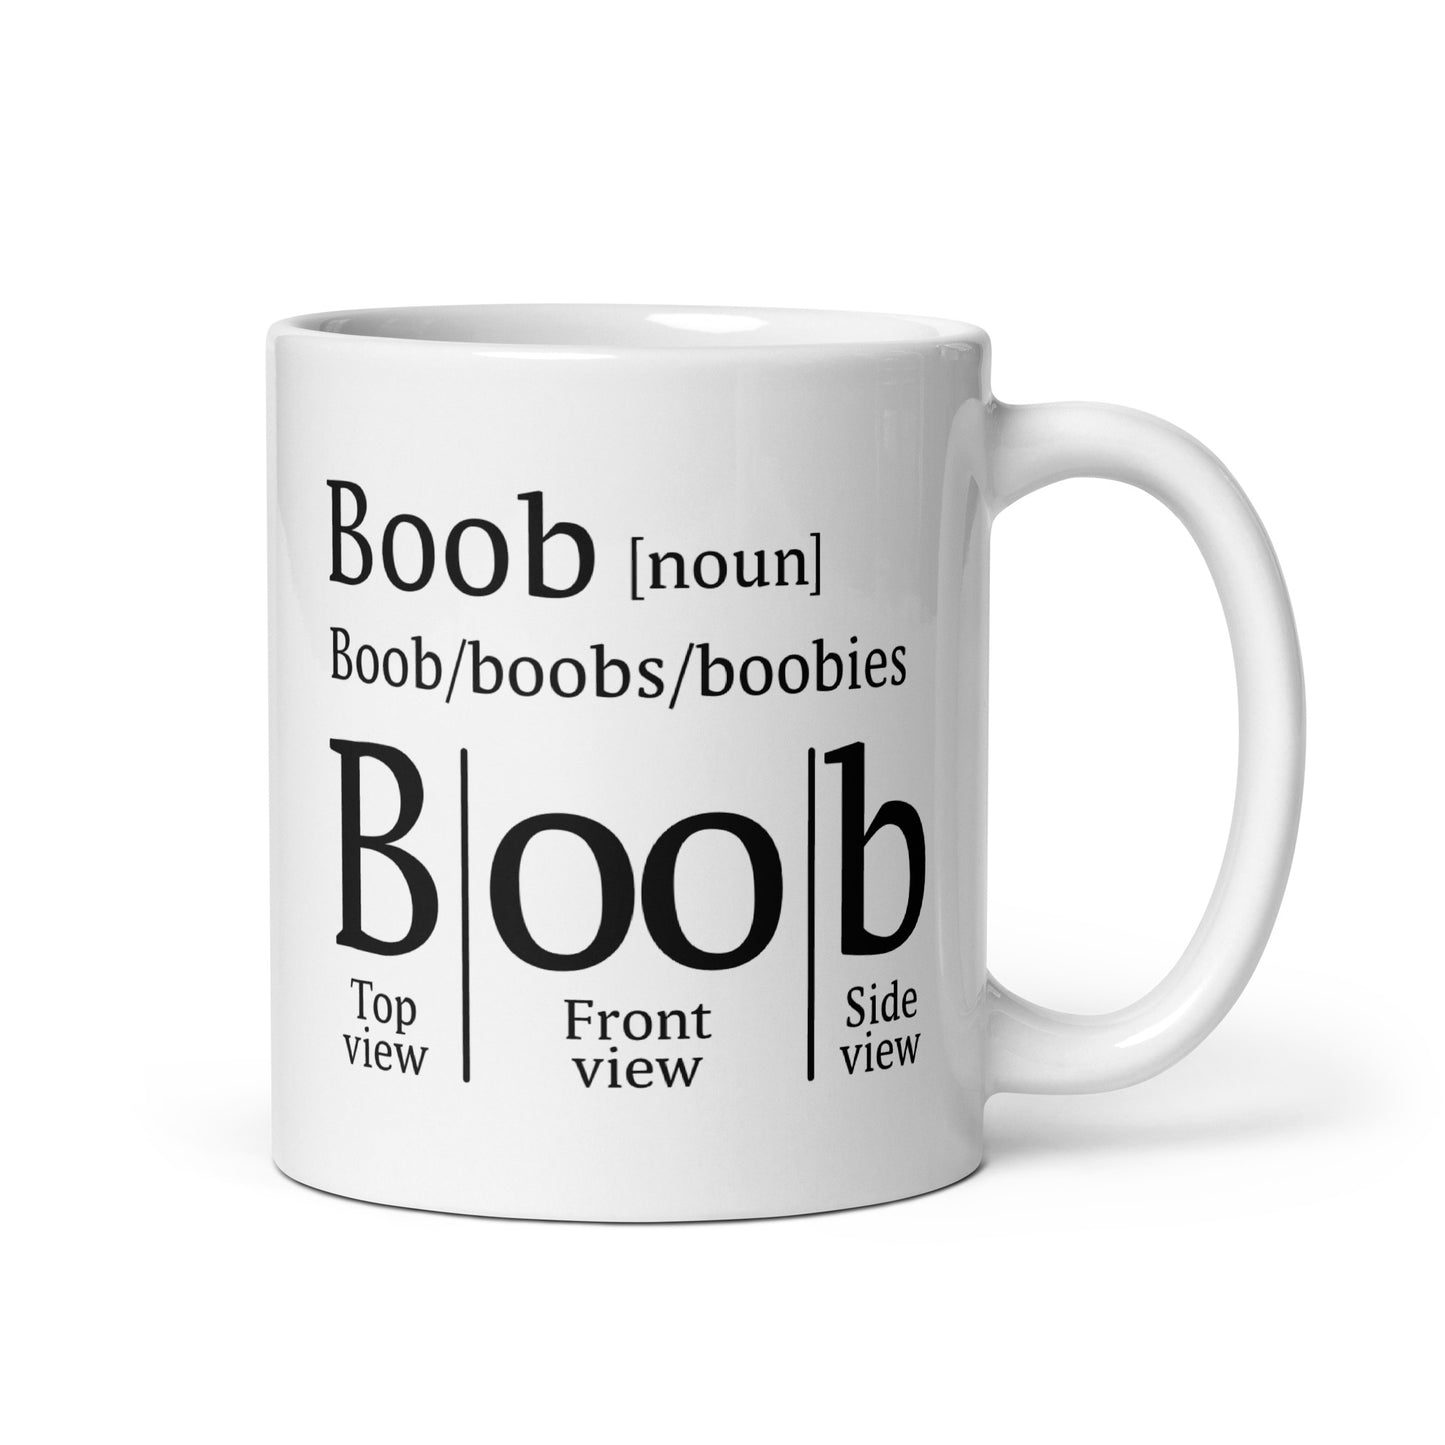 Boob Definition Mug